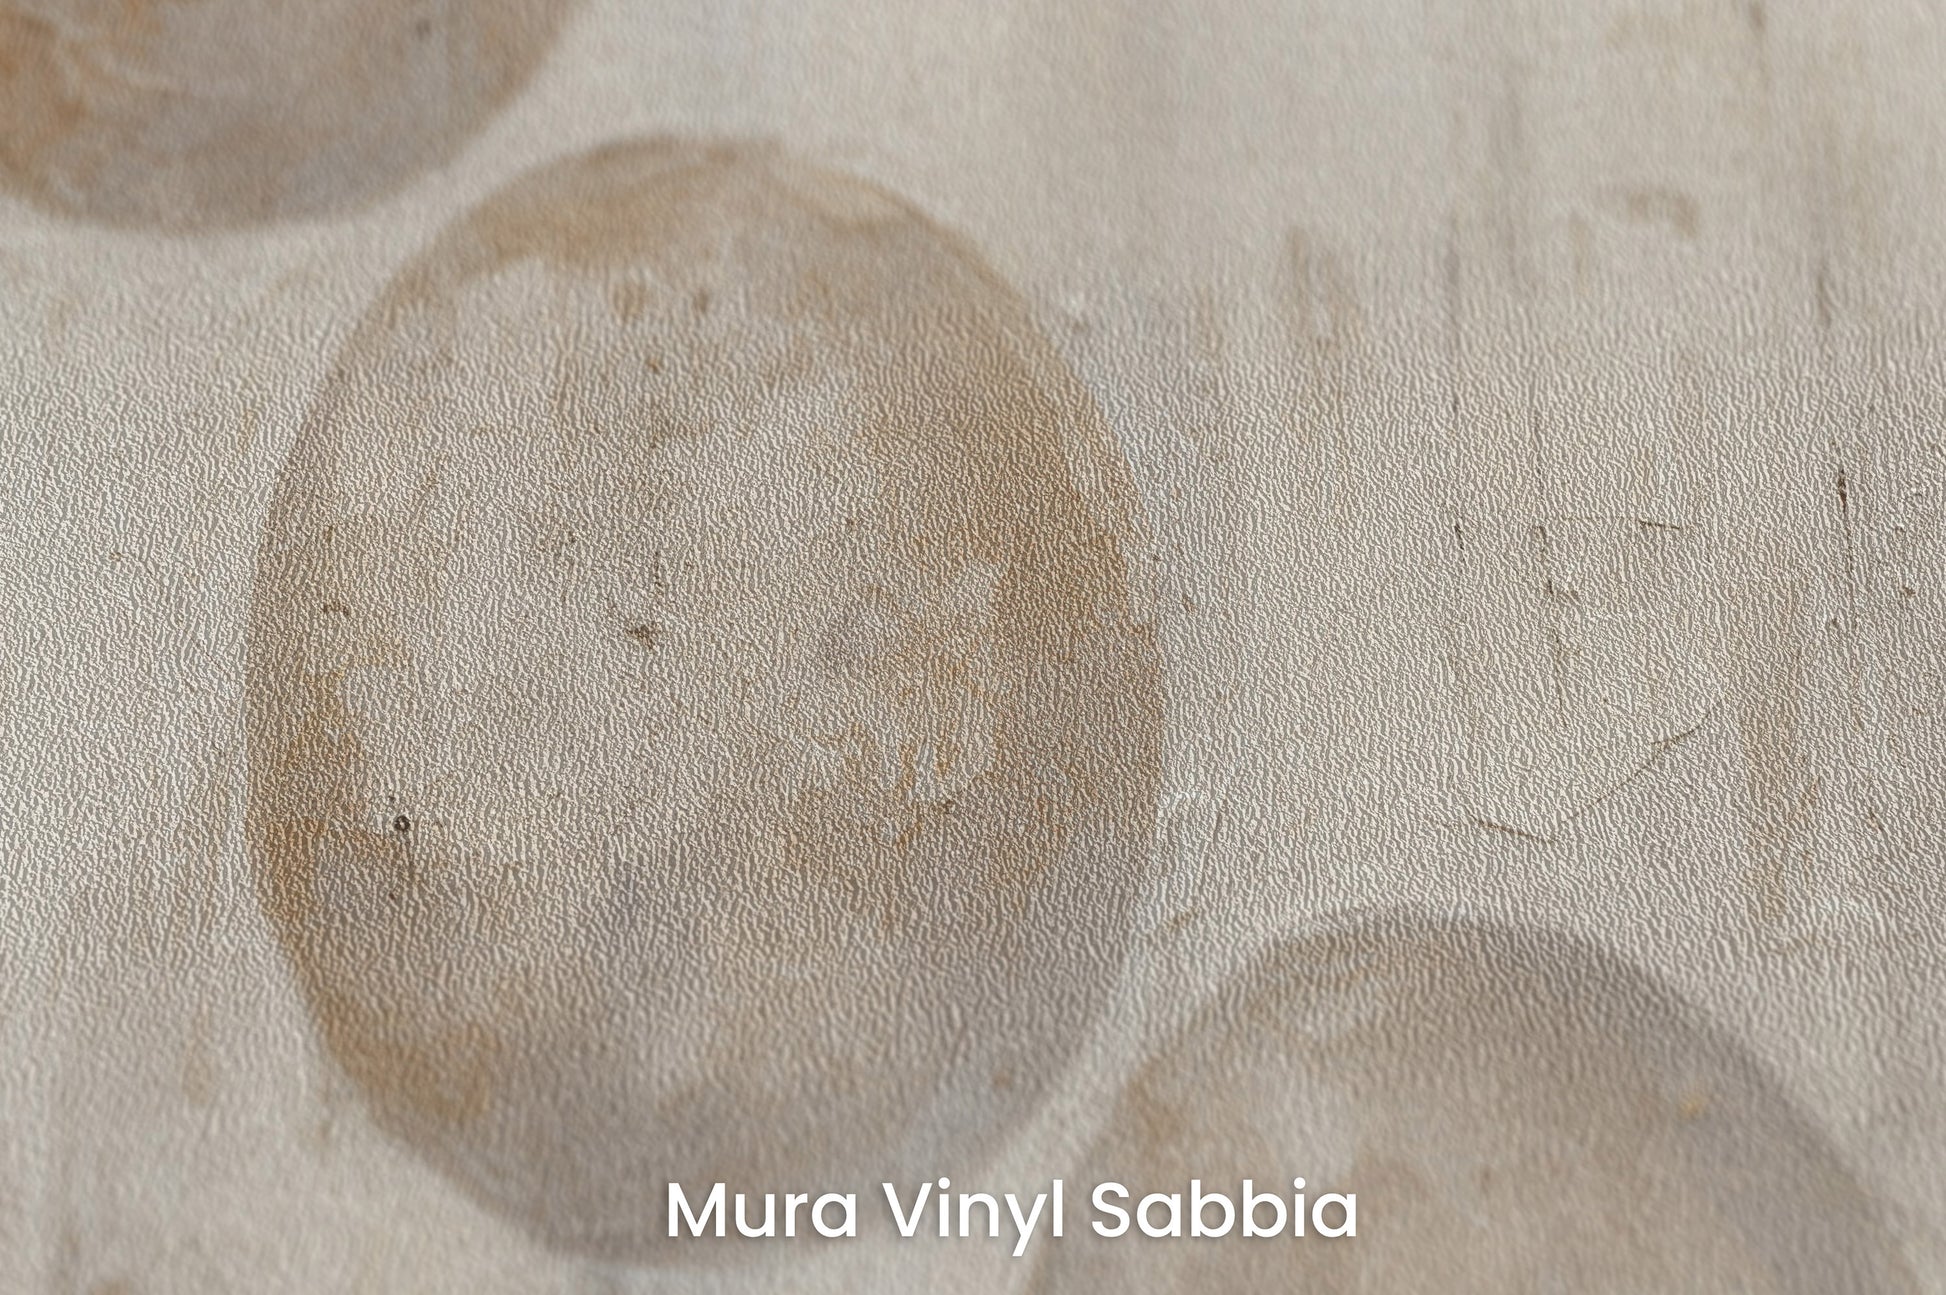 Zbliżenie na artystyczną fototapetę o nazwie SPHERICAL HARMONY ABSTRACT na podłożu Mura Vinyl Sabbia struktura grubego ziarna piasku.